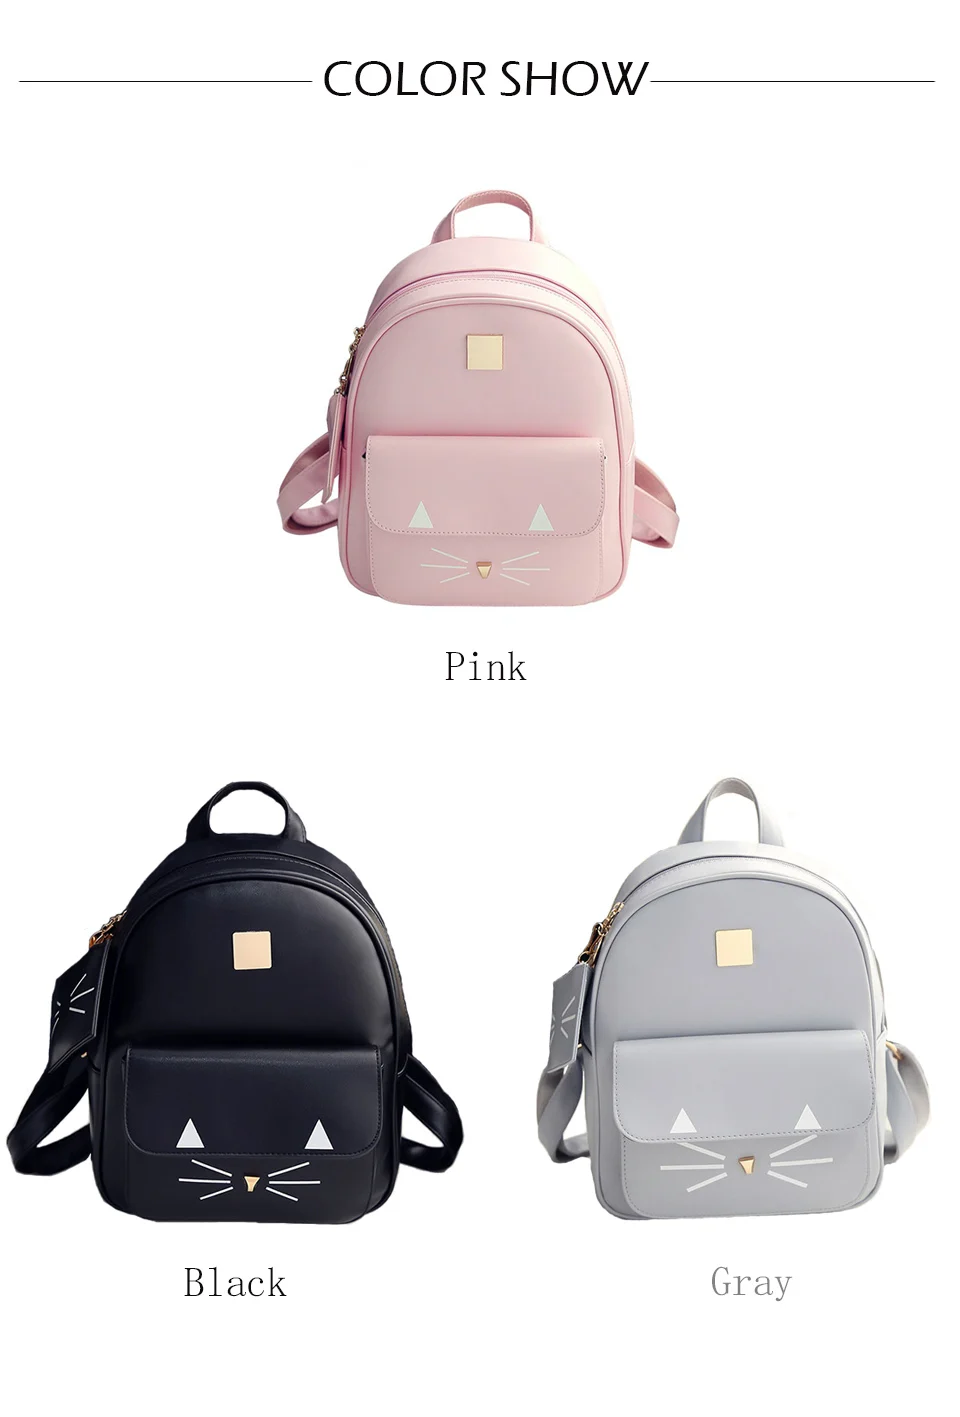 Женские Мини рюкзаки из искусственной кожи с милым принтом кота, школьные сумки для девочек-подростков, маленькие розовые рюкзаки, Mochilas Mujer